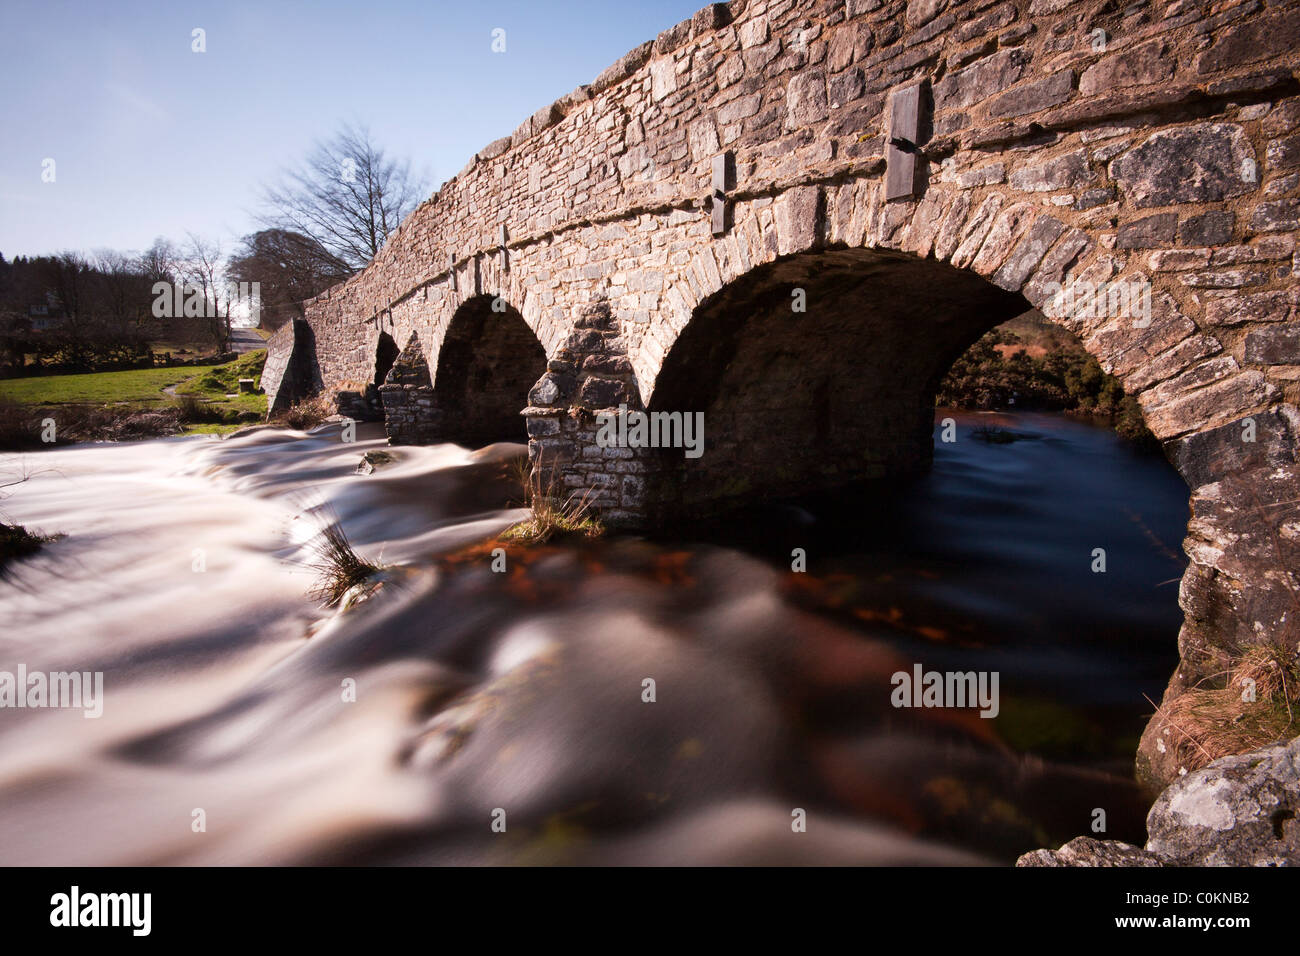 Slow exposure showing the flow of the River Dart under the bridge at Post Bridge, Dartmoor Stock Photo